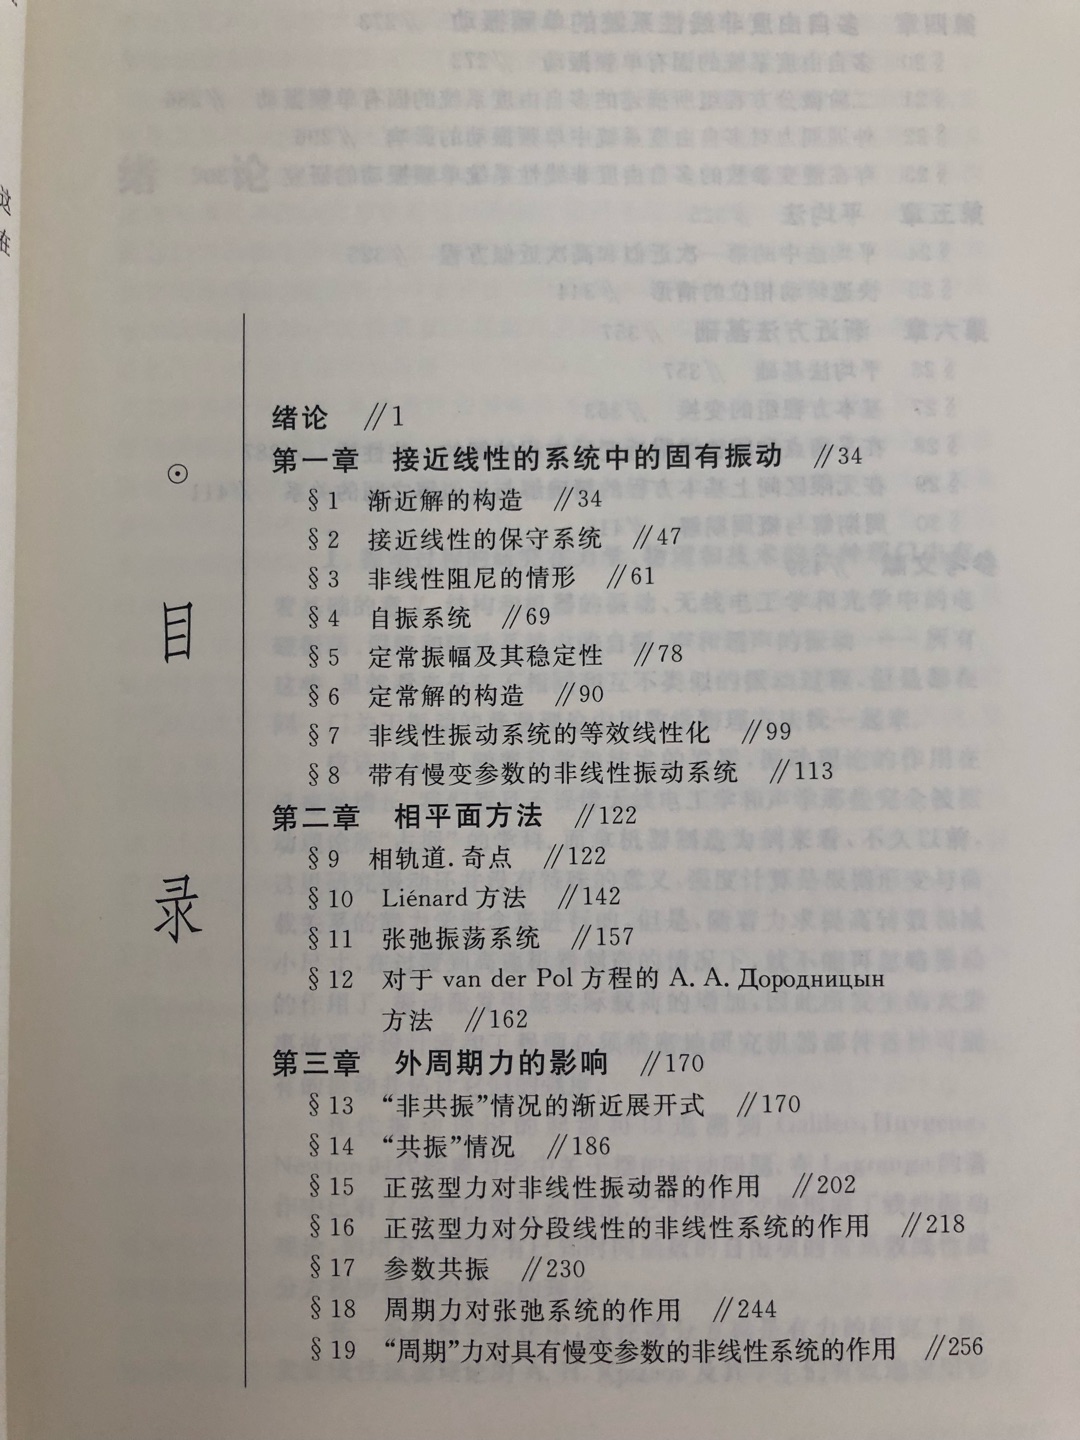 比较古老的一本图书，但是比较经典的一本图书，中文版比较不错的，推荐